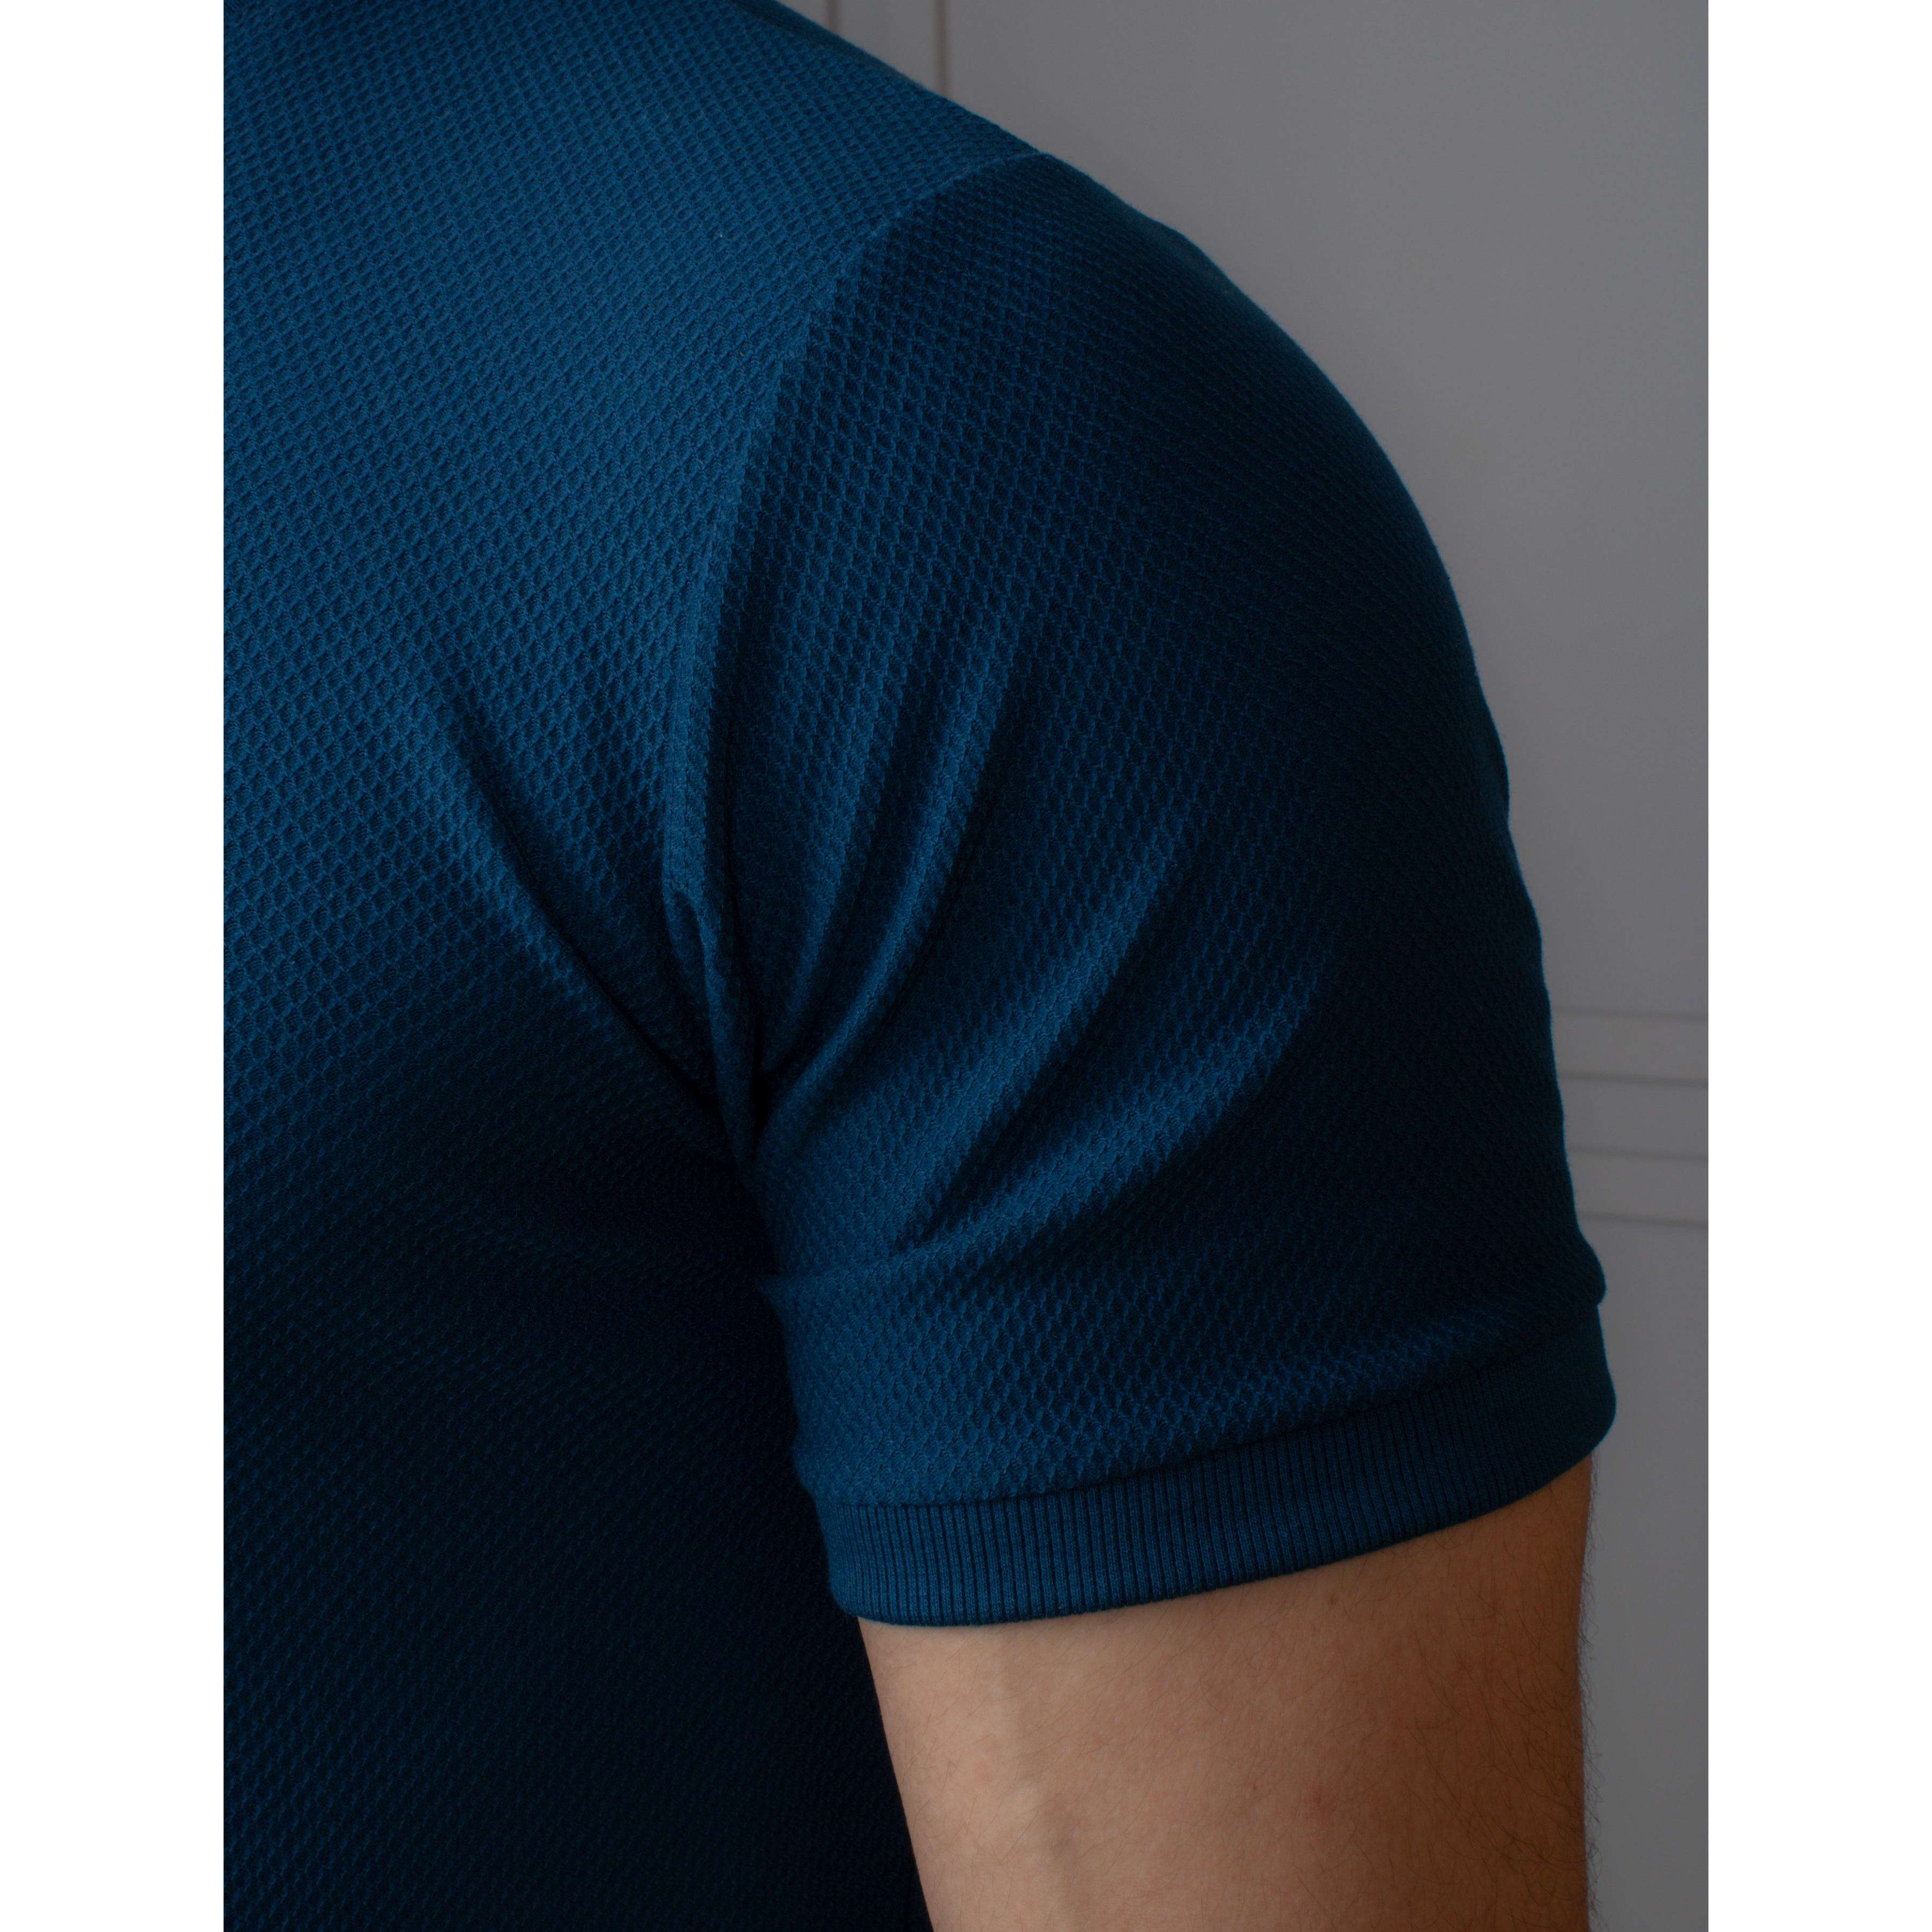 Men's Popcorn Half Sleeve Round Neck T-Shirt